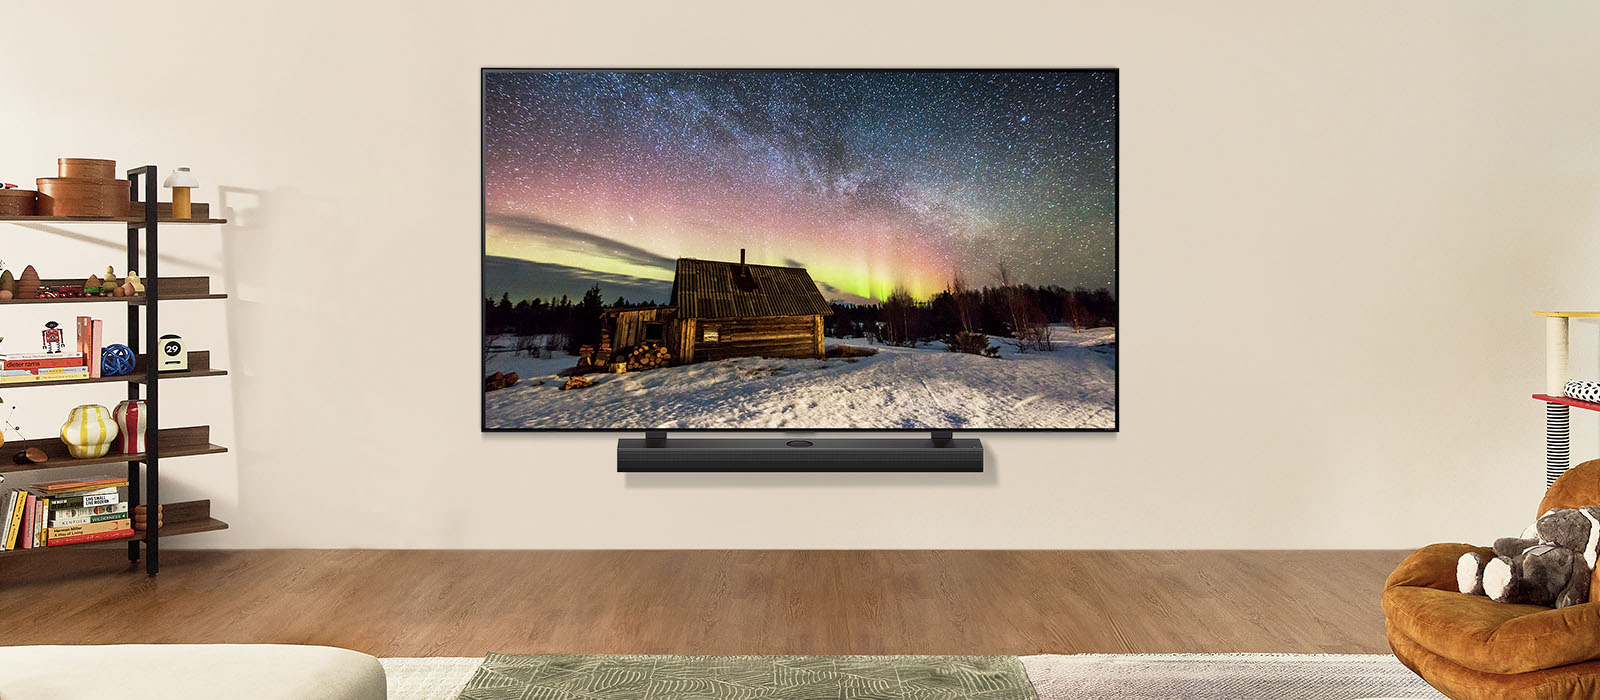 LG TV og LG-soundbar i et moderne hjem om dagen. Billedet på skærmen af nordlyset vises med ideelle niveauer af lysstyrke.